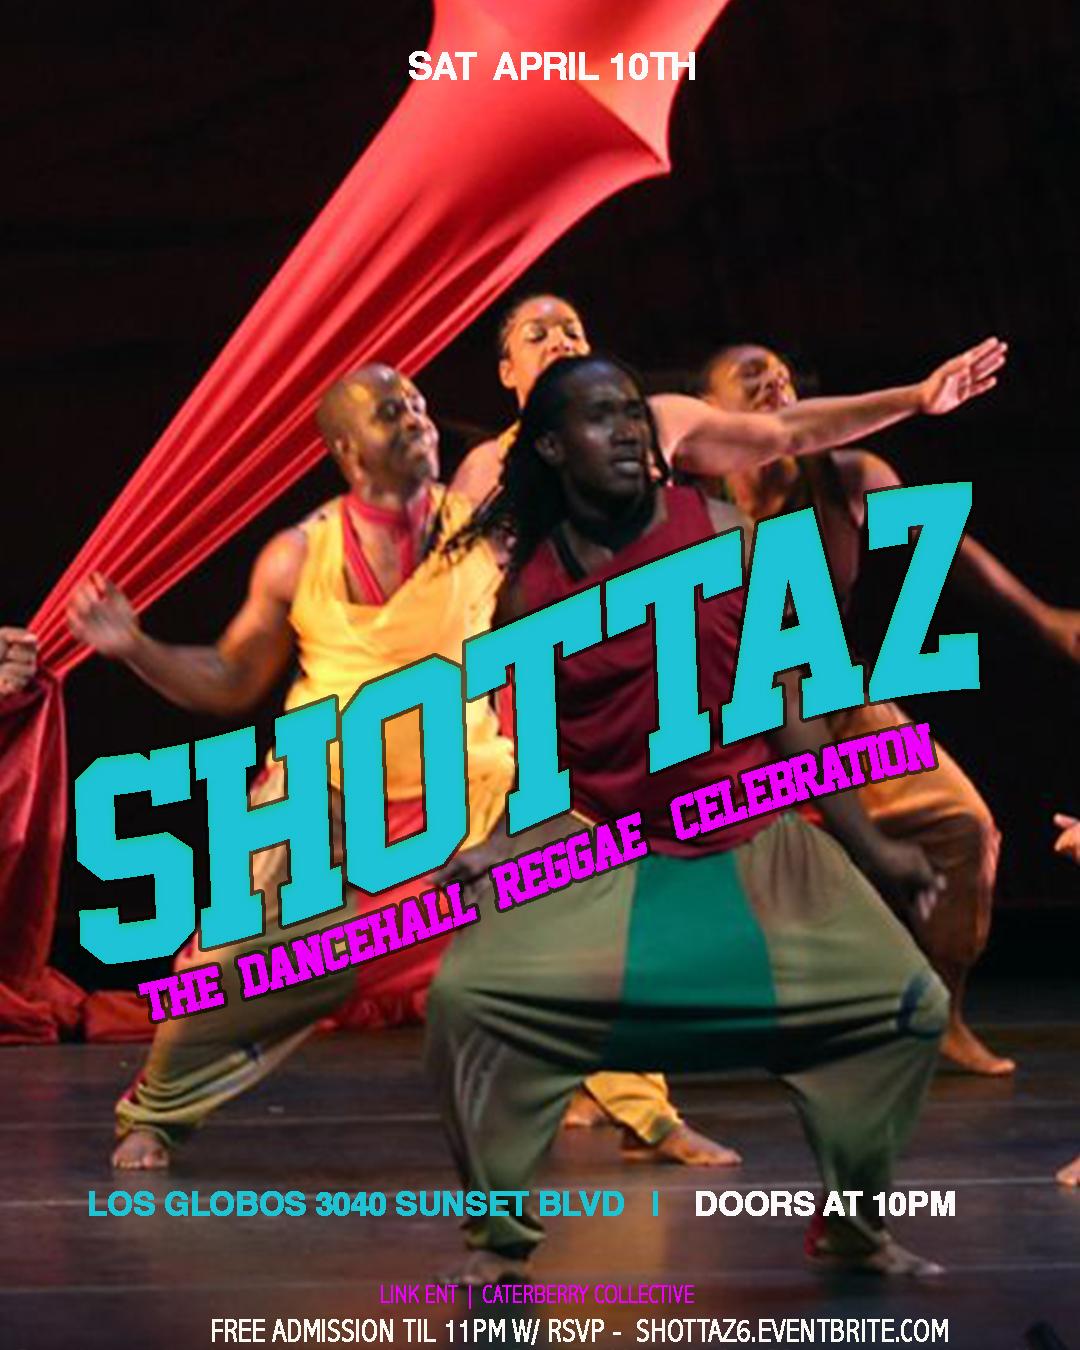 SHOTTAZ! - A DanceHall Ting!